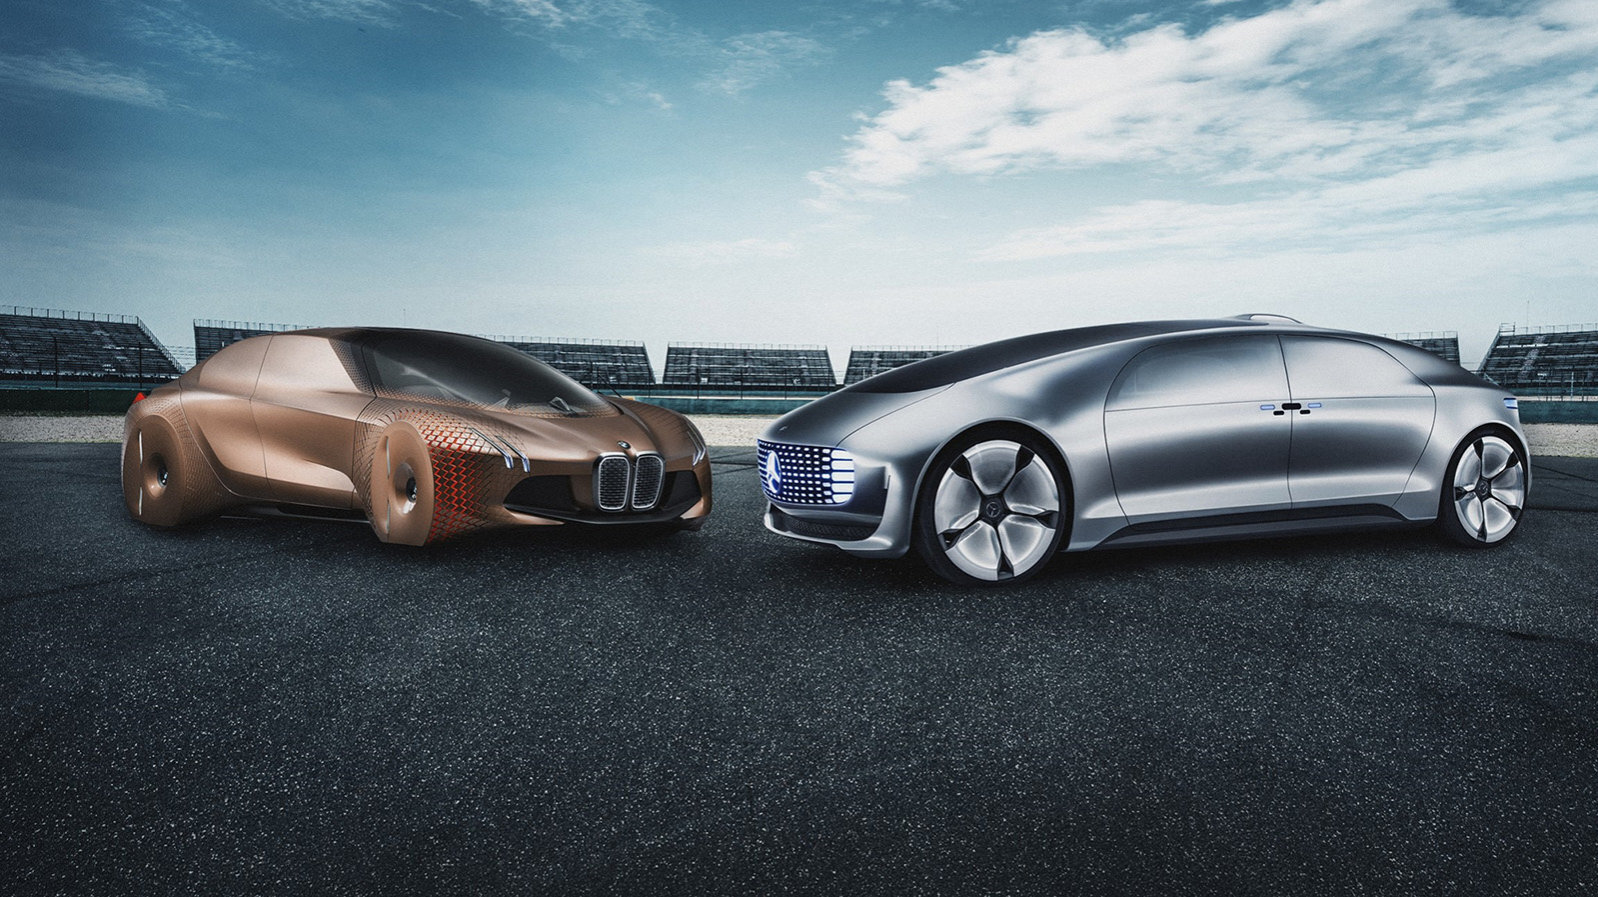 Οι Mercedes-Benz και BMW συμφώνησαν να αναπτύξουν από κοινού Level 4 αυτο-οδηγούμενα οχήματα